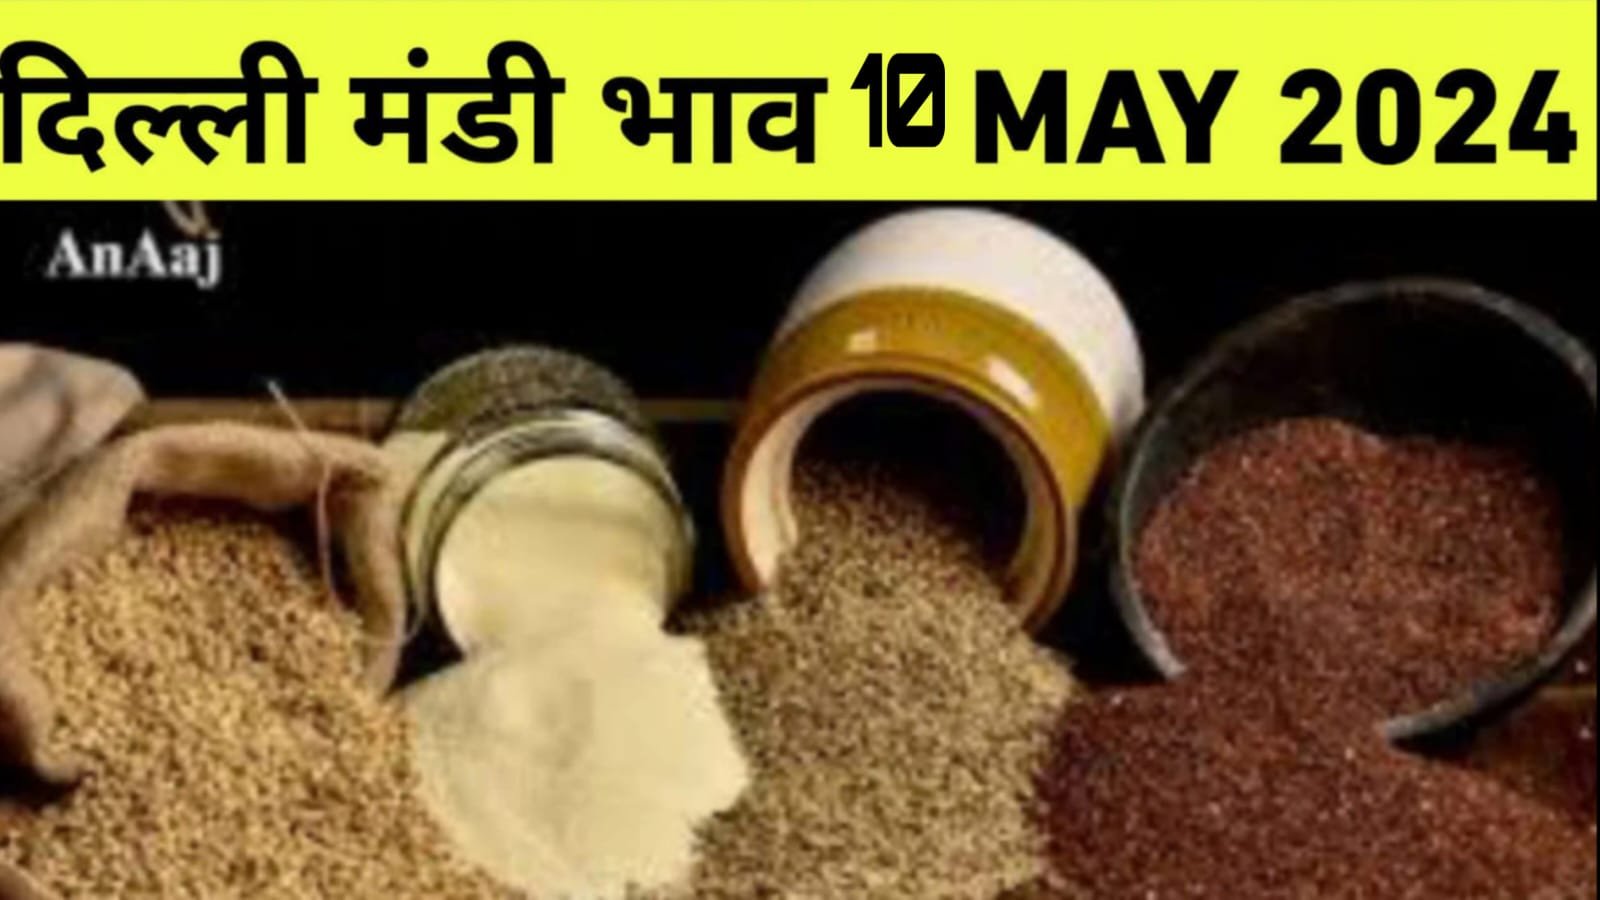 You are currently viewing दिल्ली मंडी भाव रेट 10 MAY 2024, जाने चना ,गेहूं, मूंग मोठ, मसूर से भी फसलों के दाम